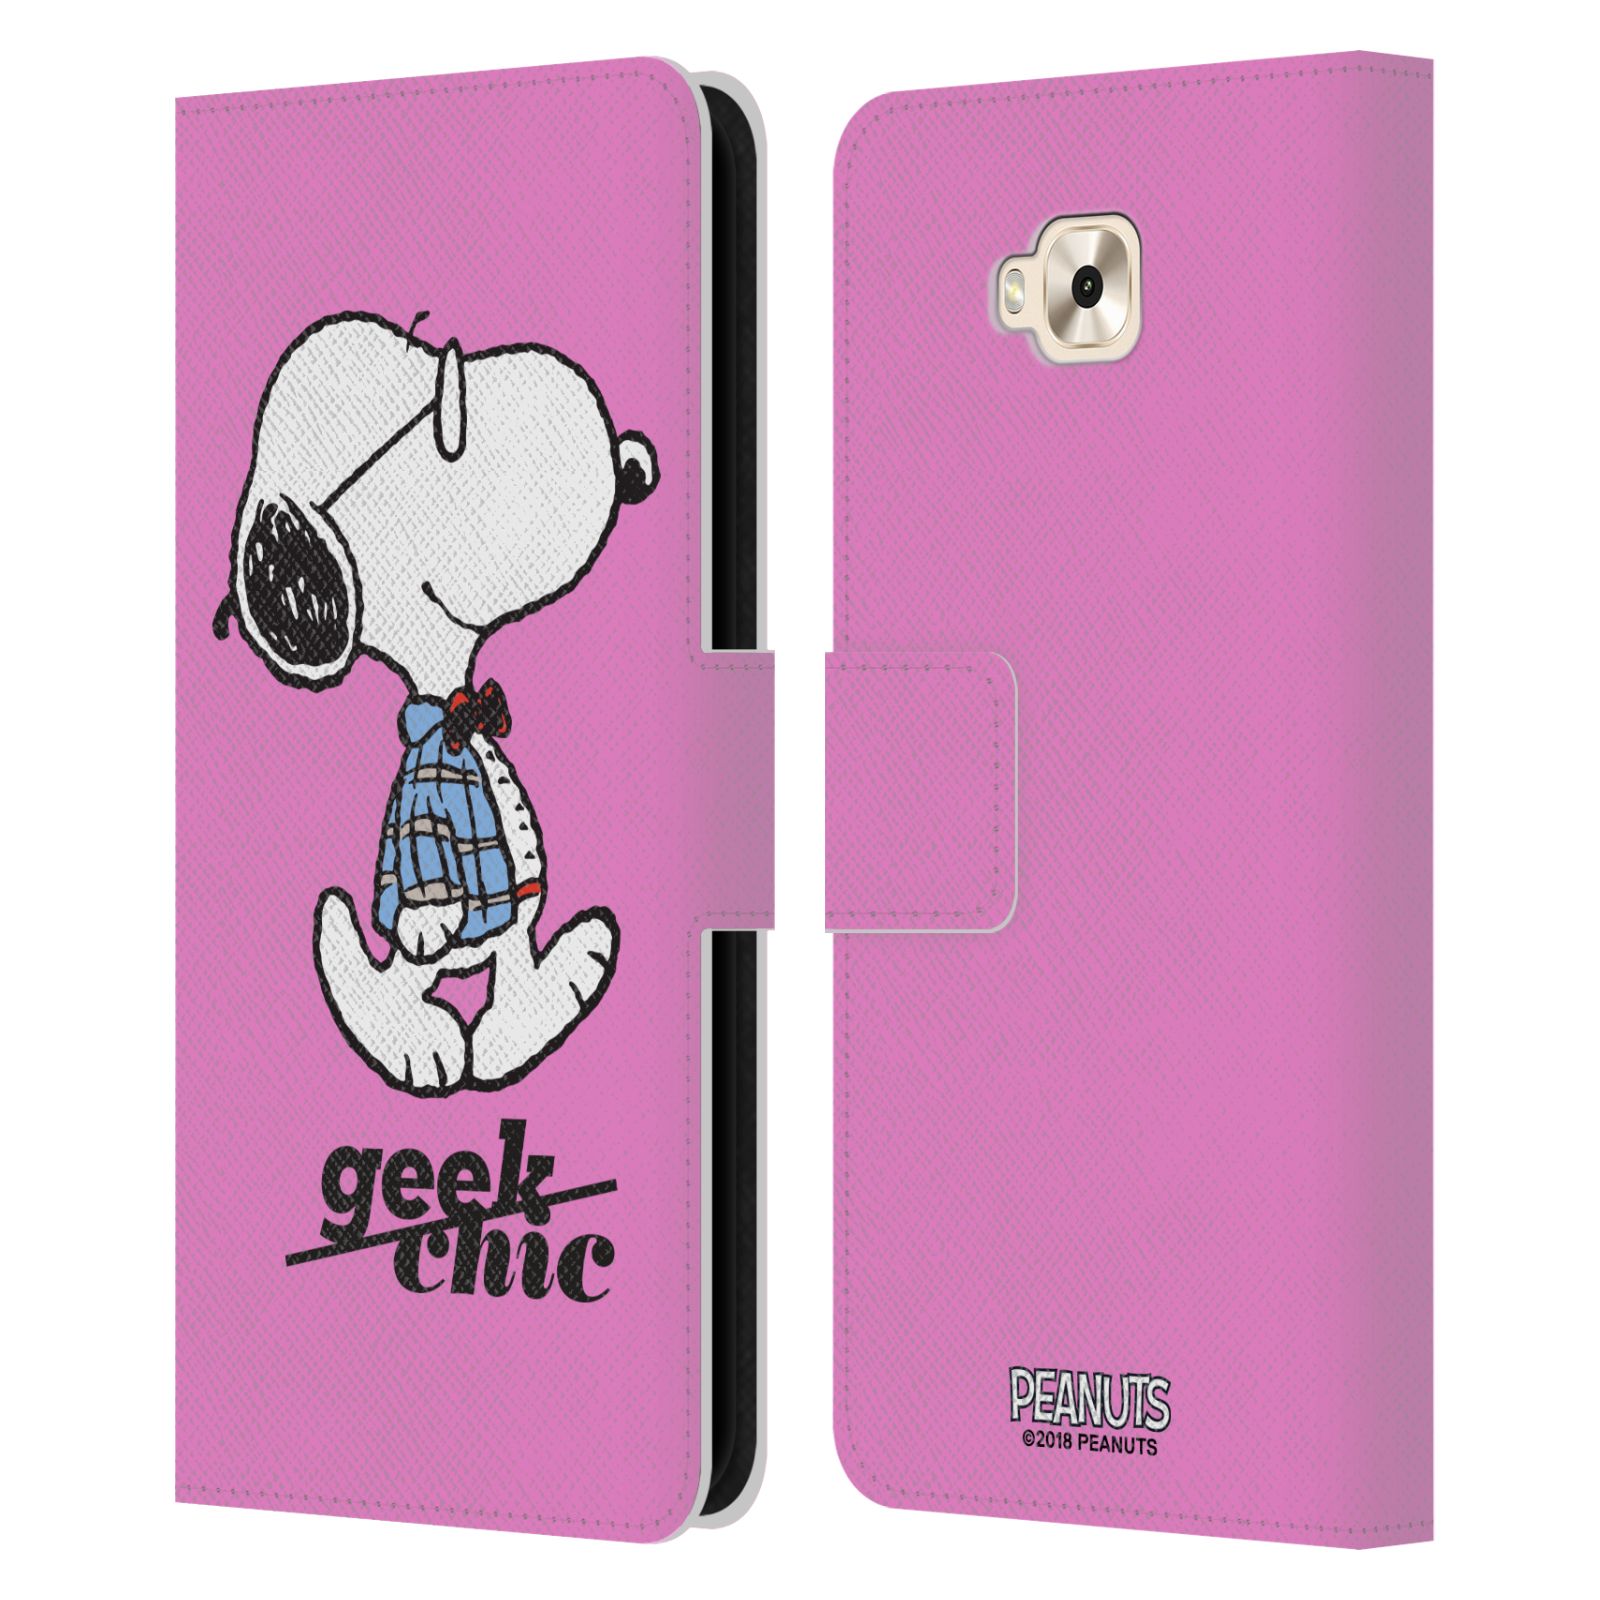 Pouzdro na mobil Asus Zenfone 4 Selfie ZD553KL - Head Case - Peanuts - růžový pejsek snoopy nerd